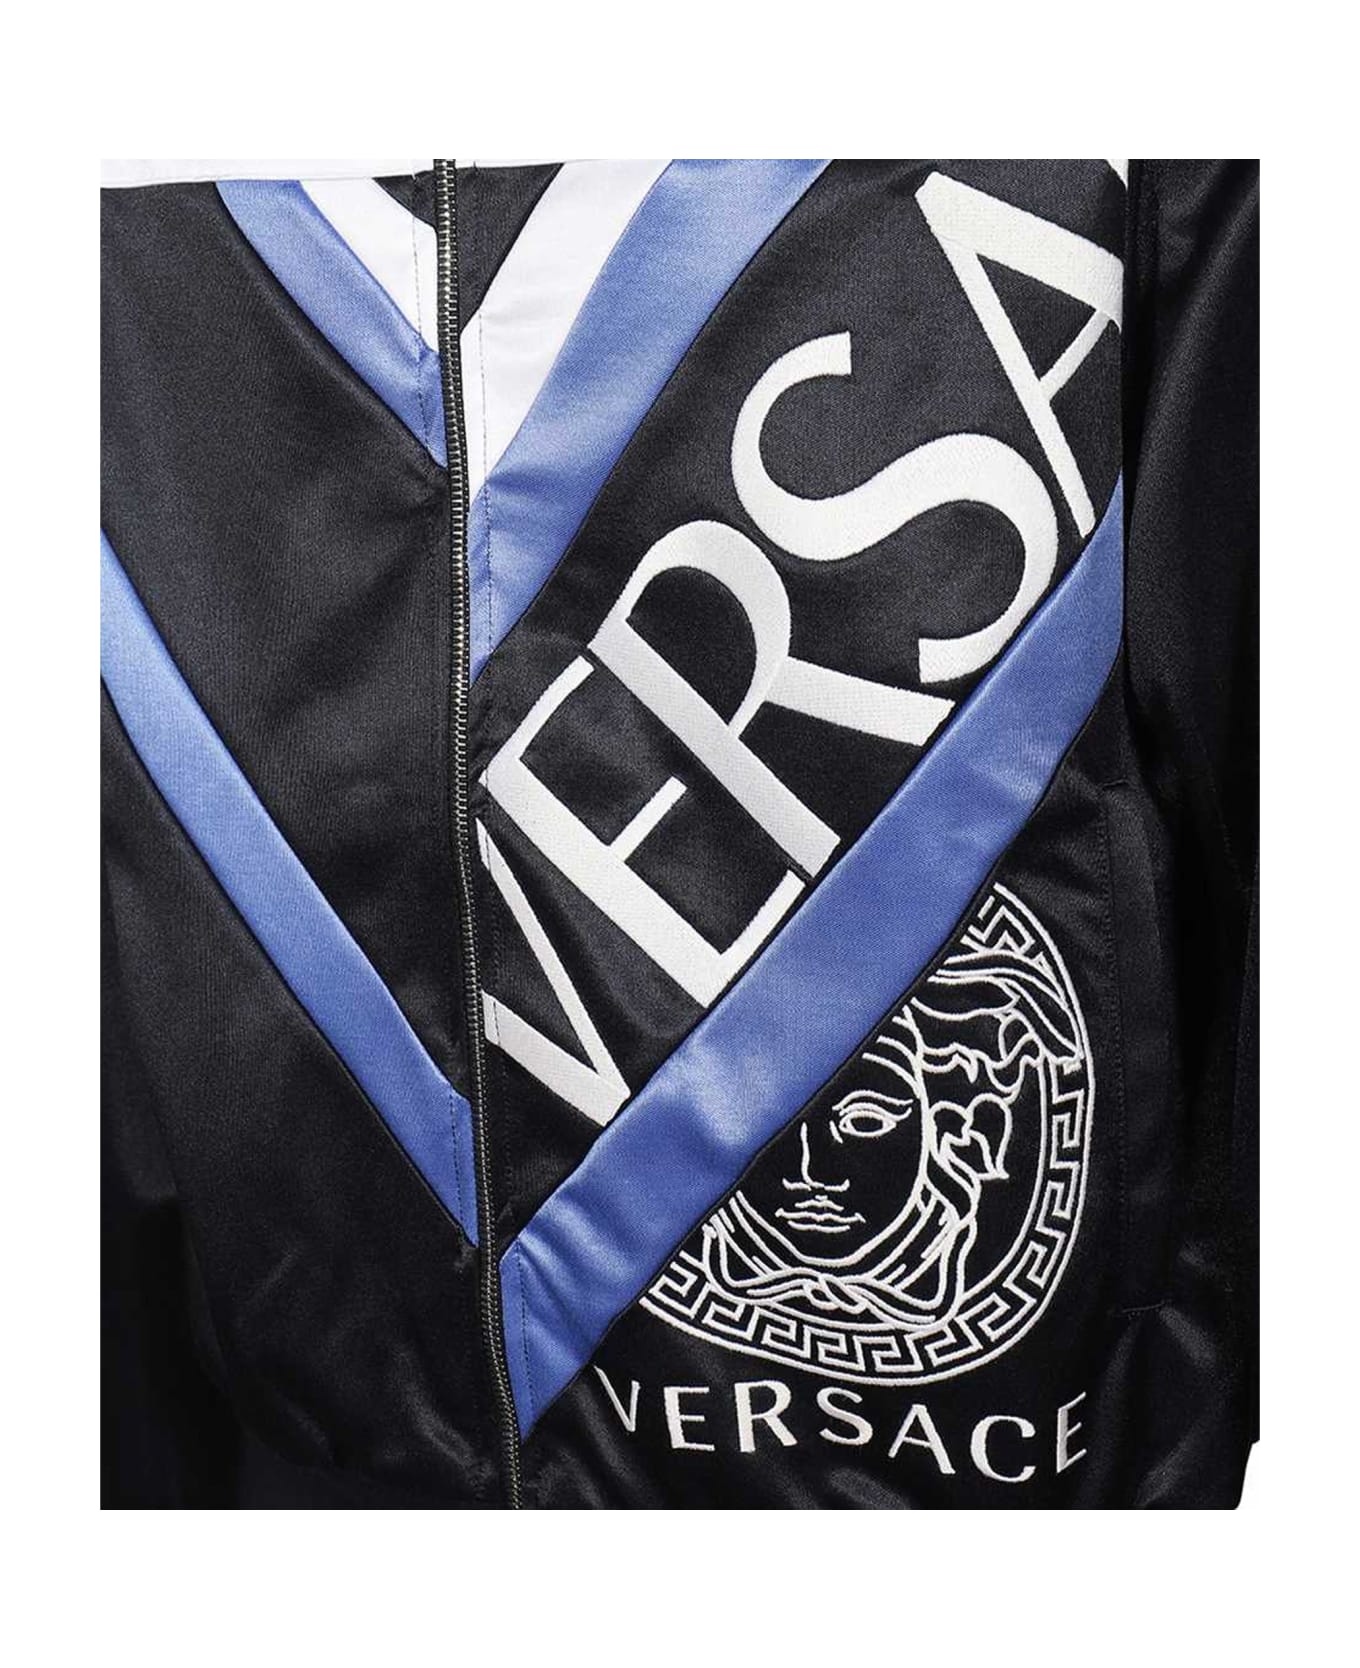 Versace Logo Printed Jacket - Black